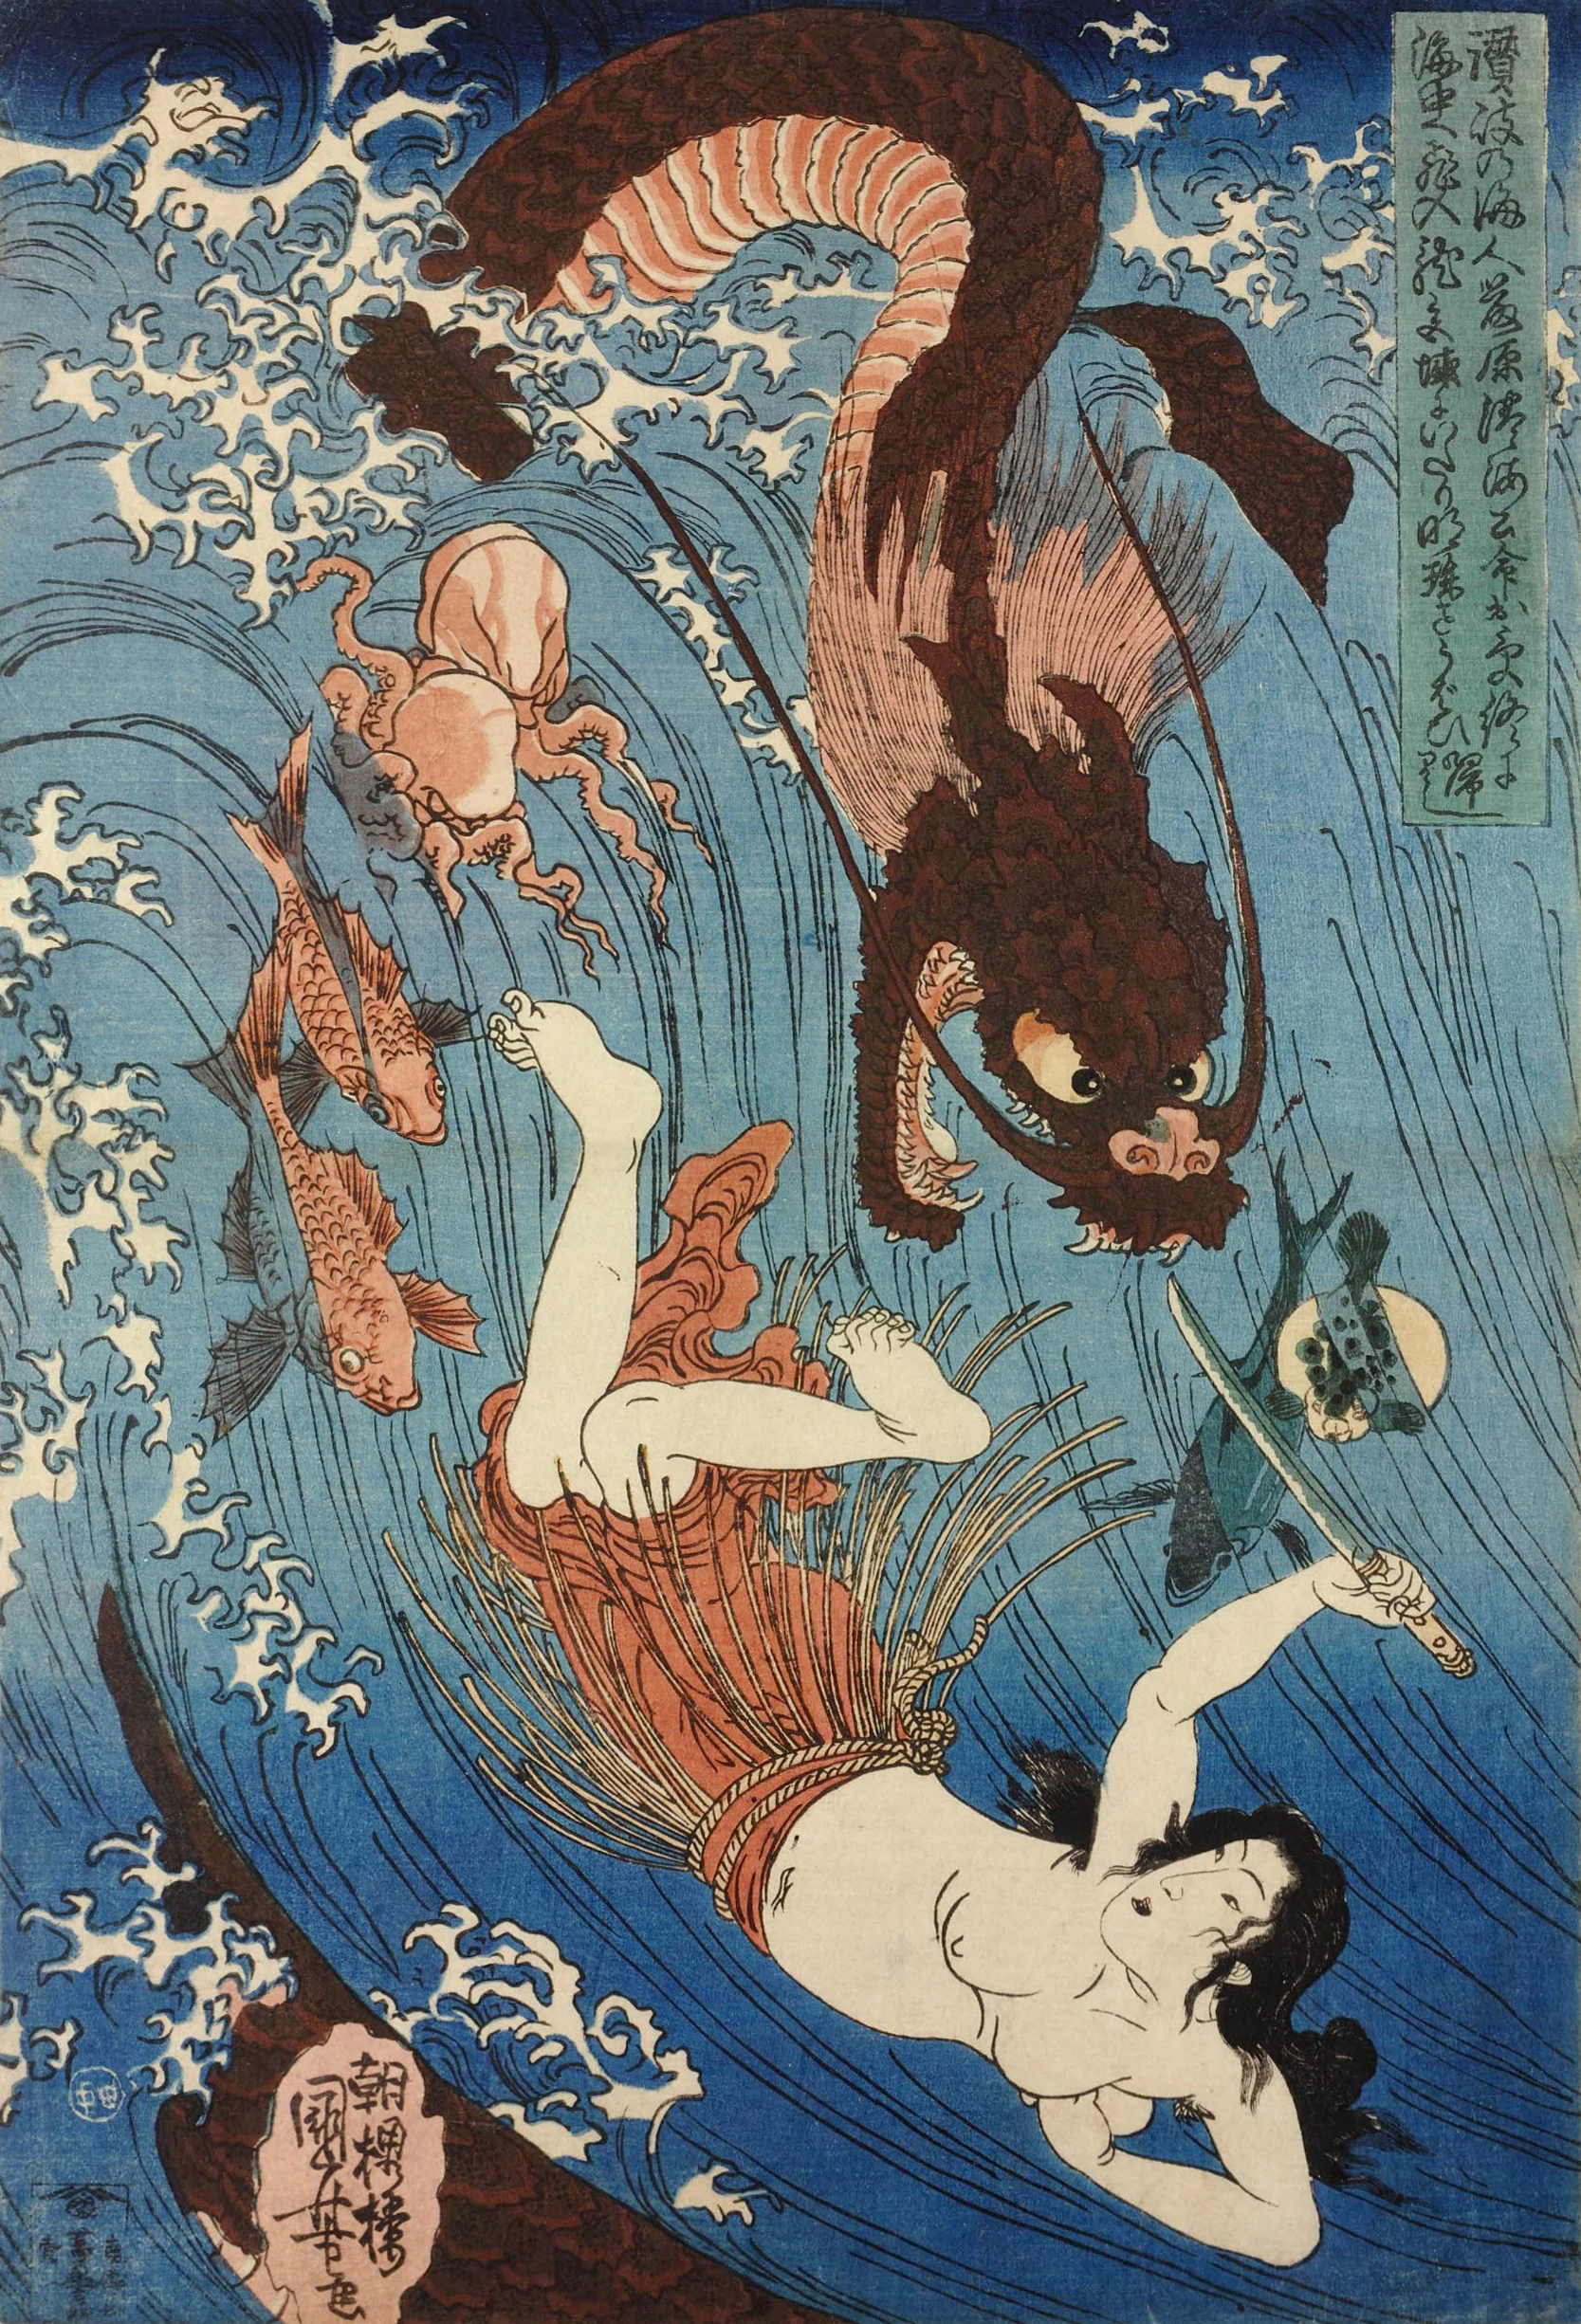 Tamatori escaping from the Dragon King, Utagawa Kuniyoshi